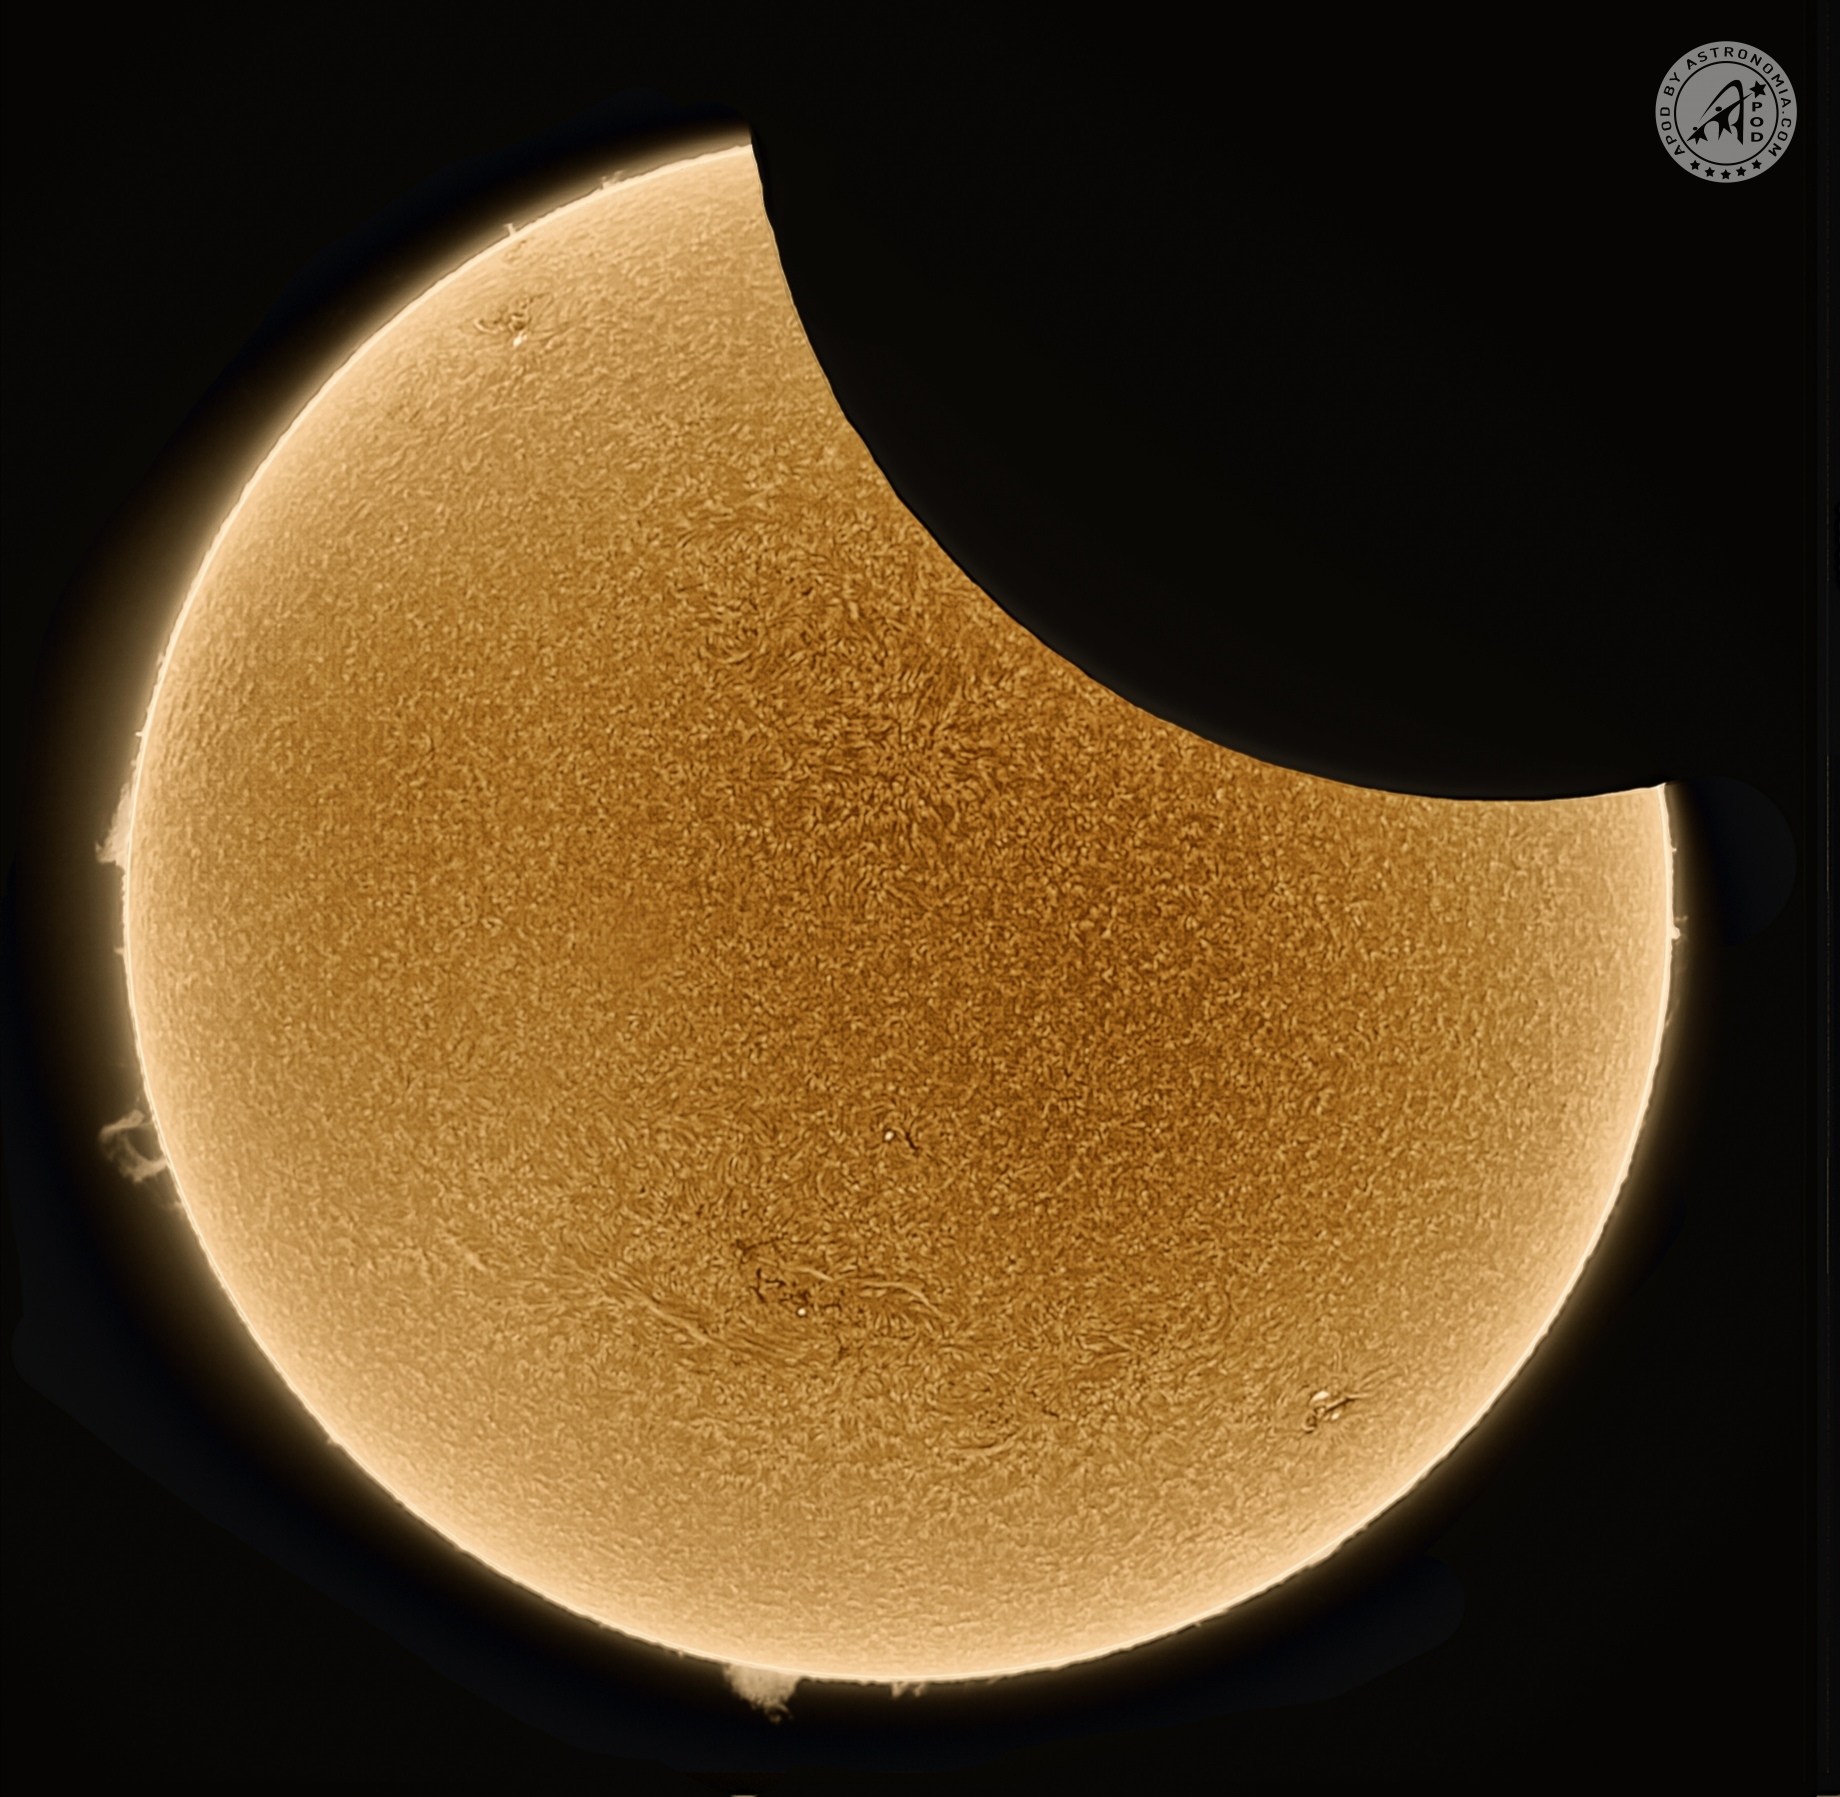 Eclissi parziale del 25 ottobre 2022